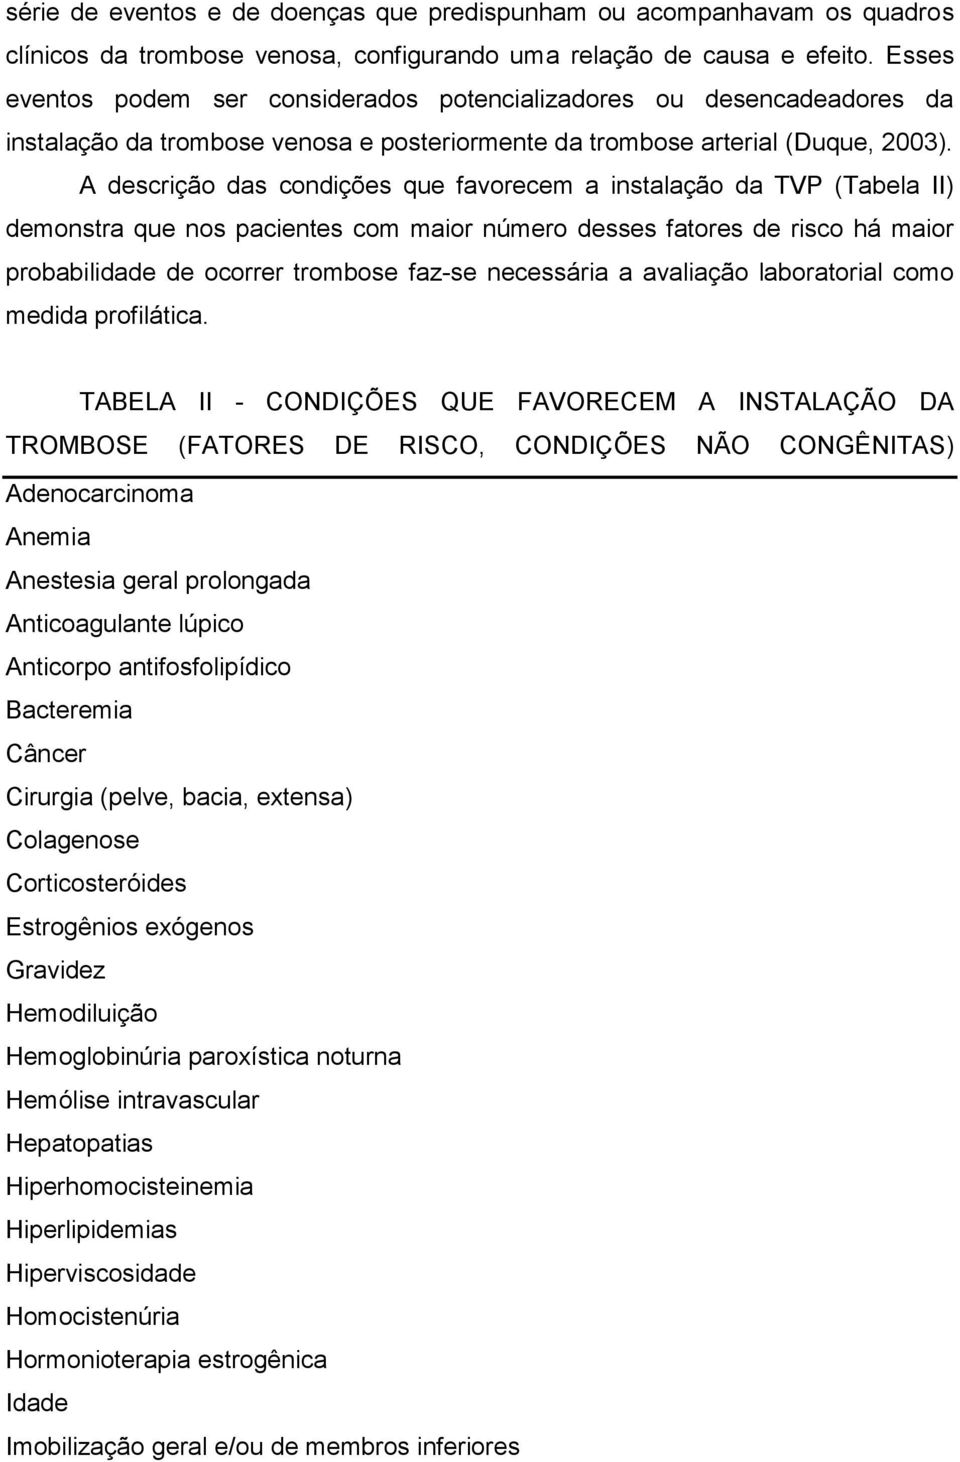 A descrição das condições que favorecem a instalação da TVP (Tabela II) demonstra que nos pacientes com maior número desses fatores de risco há maior probabilidade de ocorrer trombose faz-se